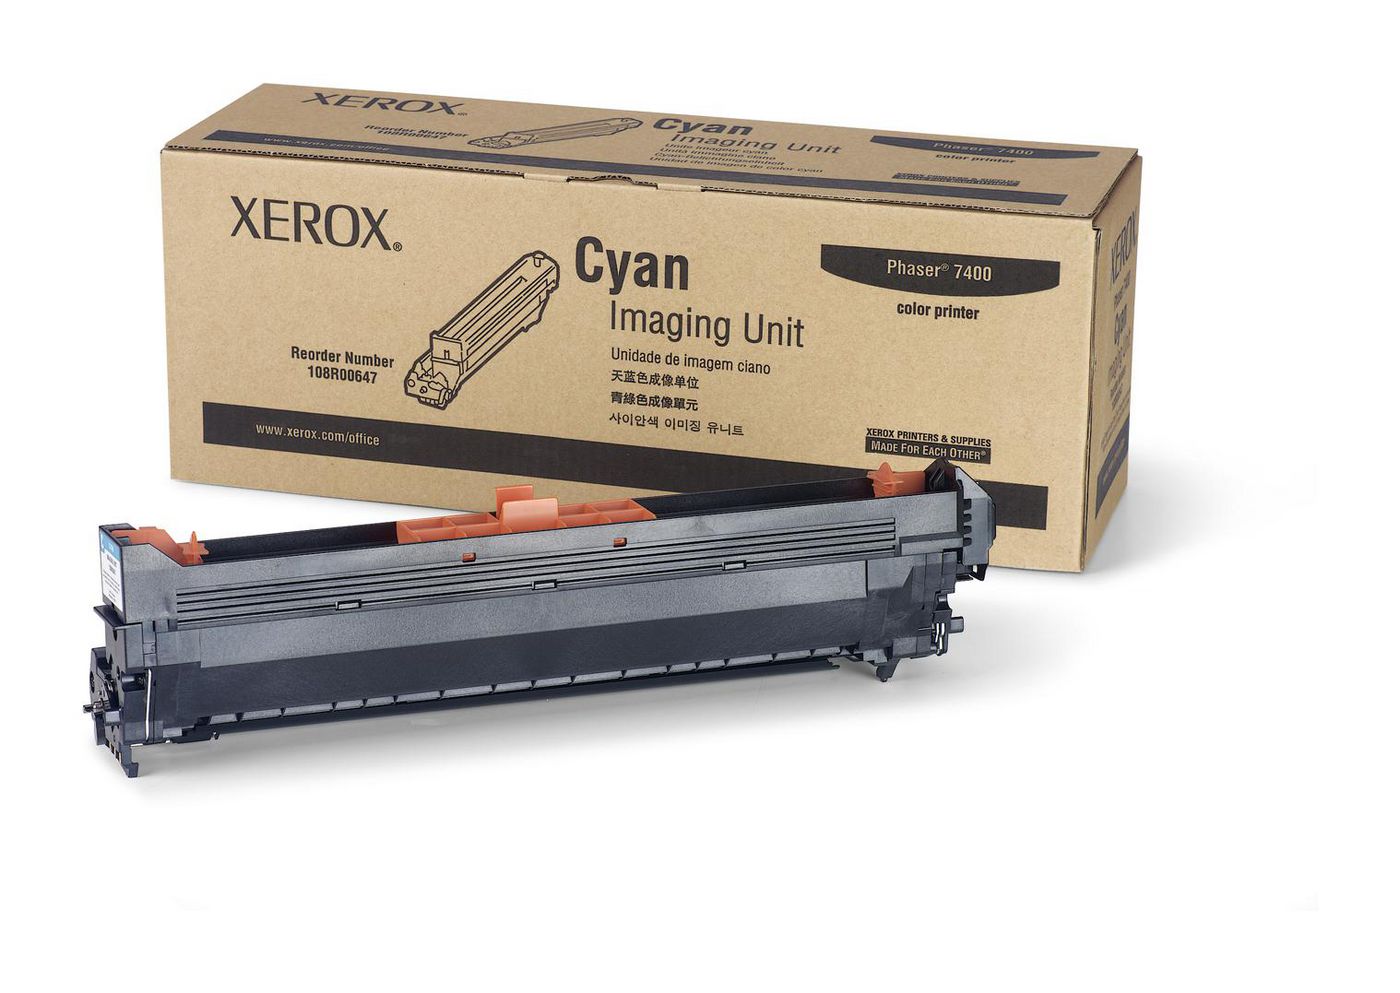 XEROX Phaser 7400 Cyan Druckerbildeinheit